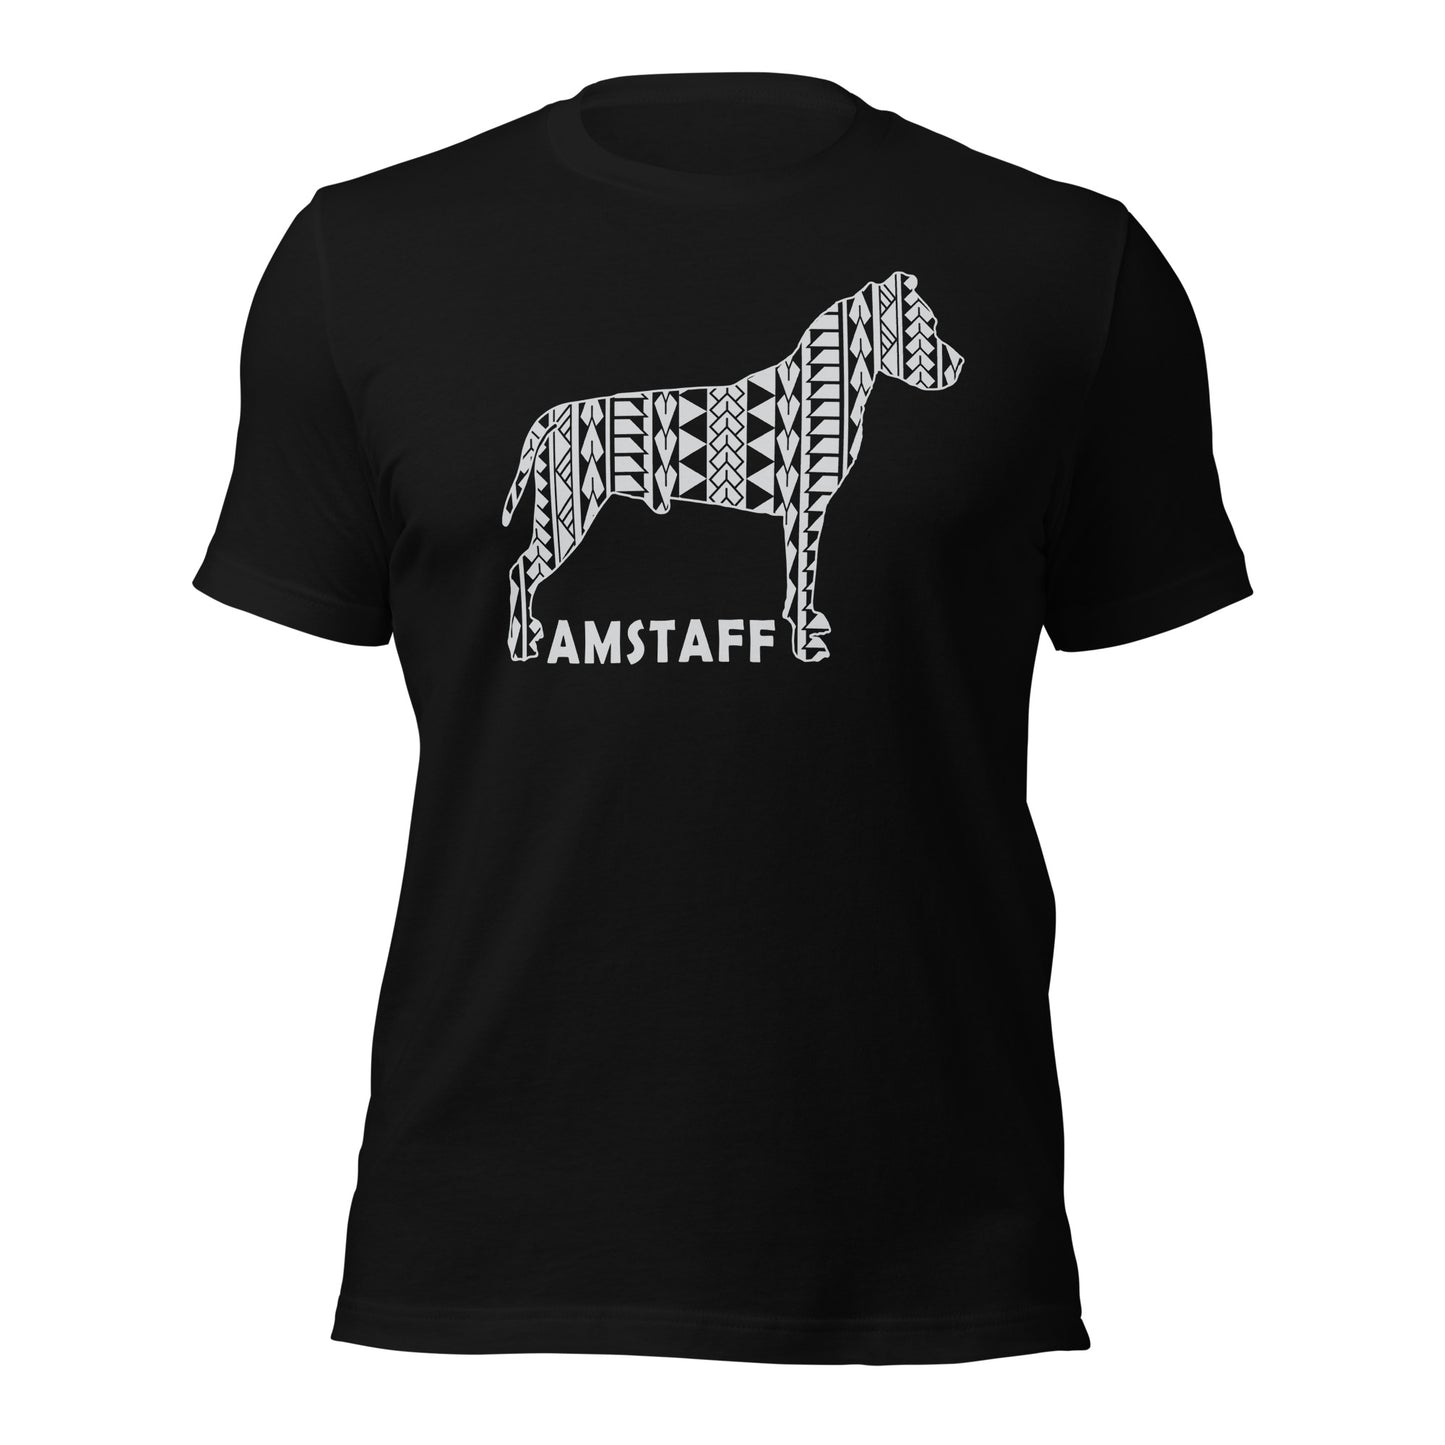 Amstaff Polynesian t-shirt black by Dog Artistry.